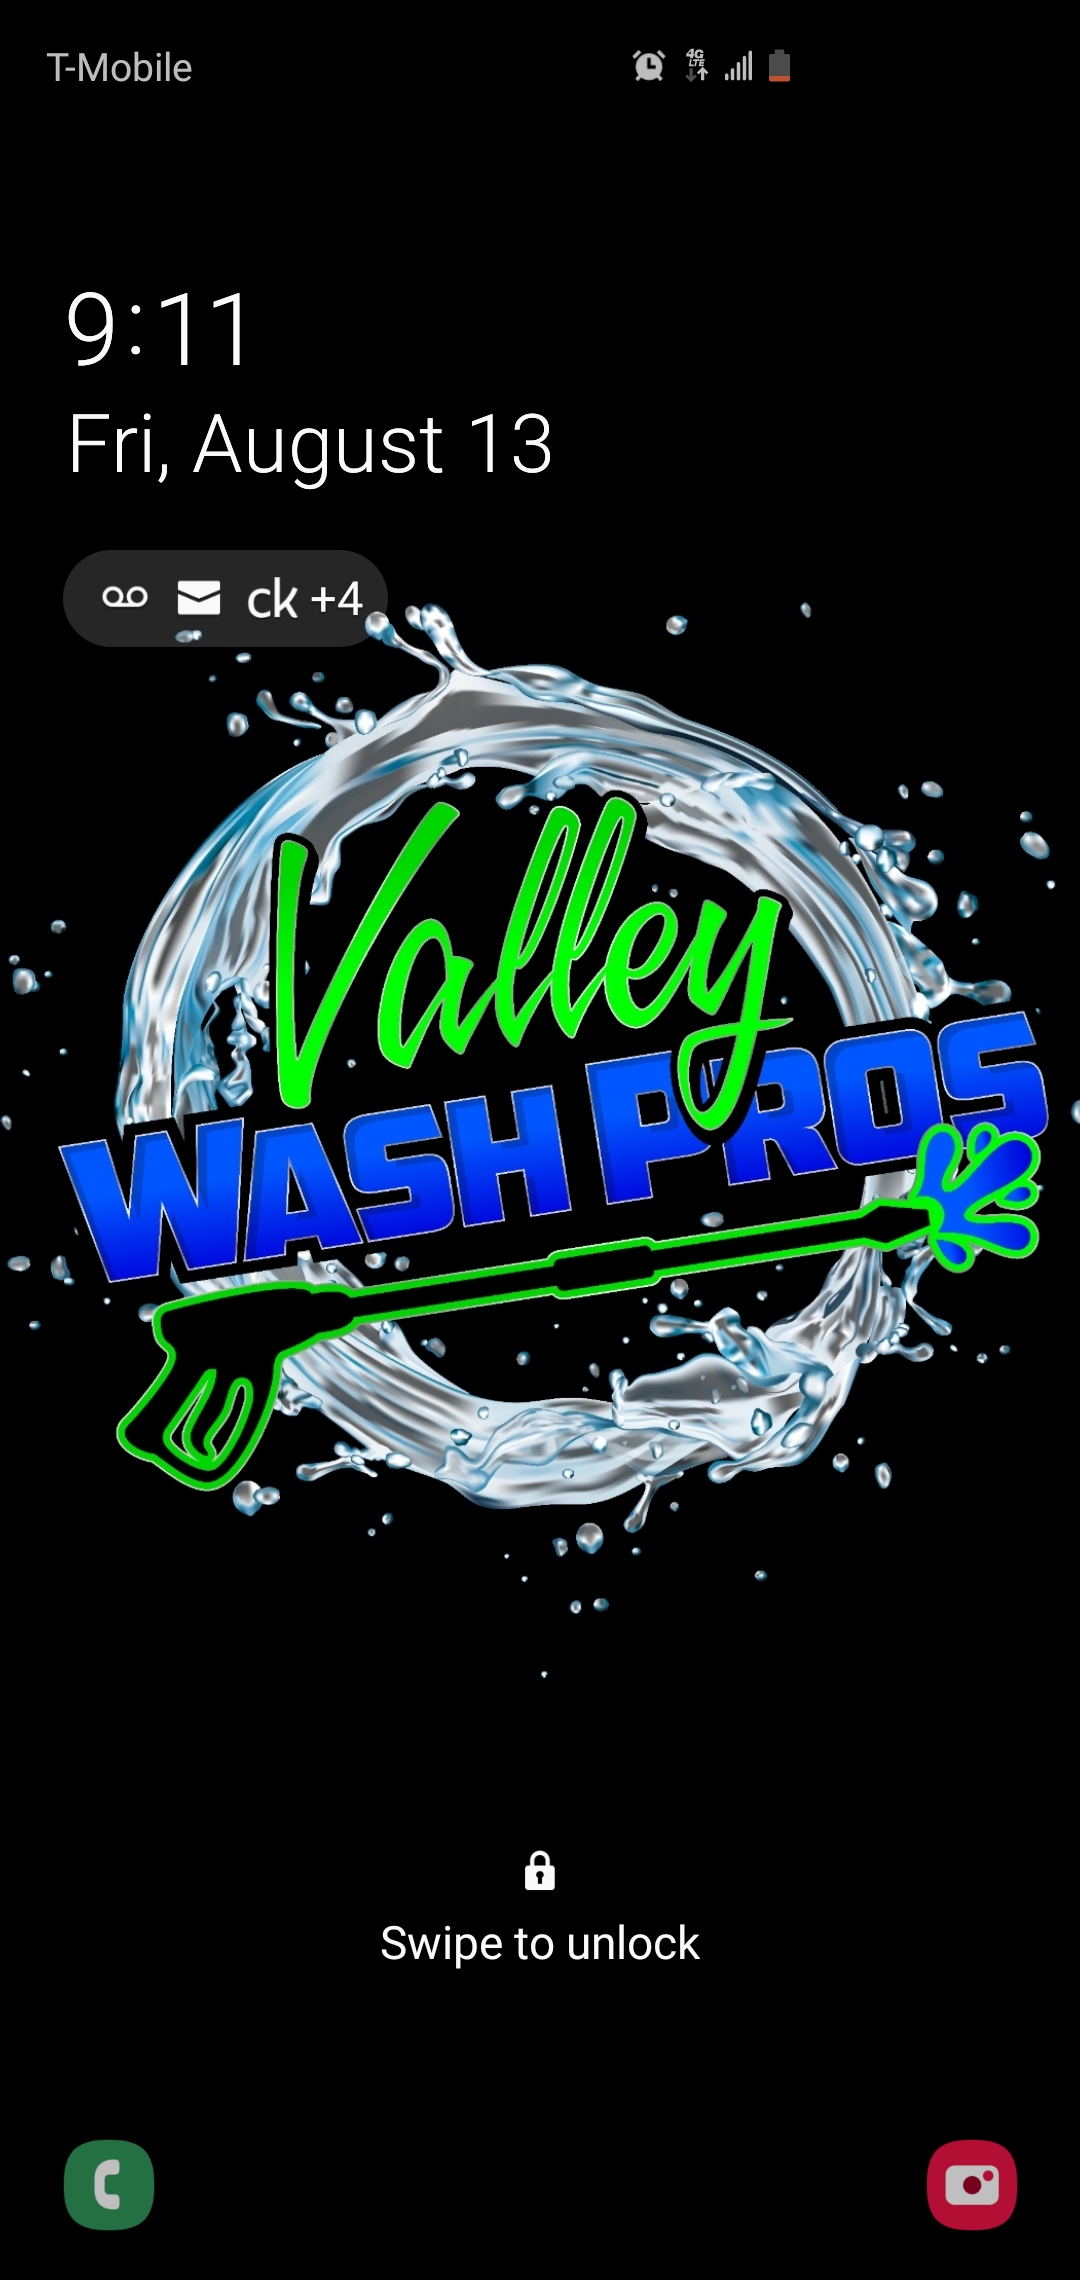 Valley Wash Pros-Unlicensed Contractor Logo